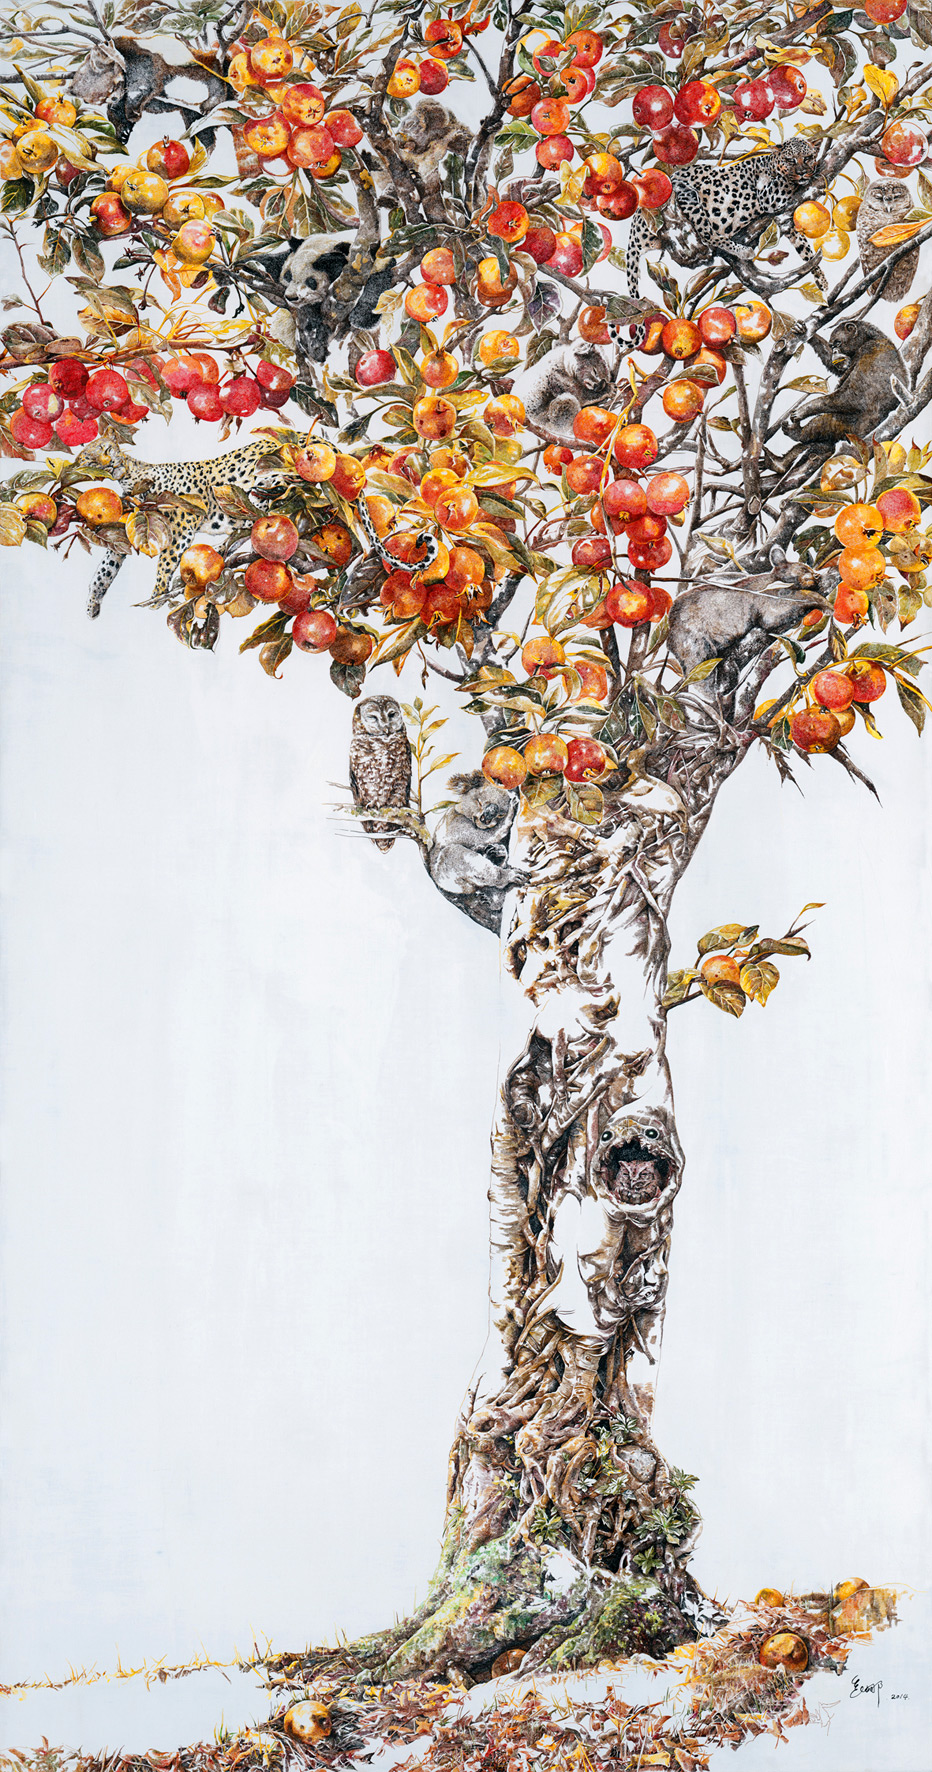 Опьянённый осенью: масштабный акриловый рисунок Чжао На